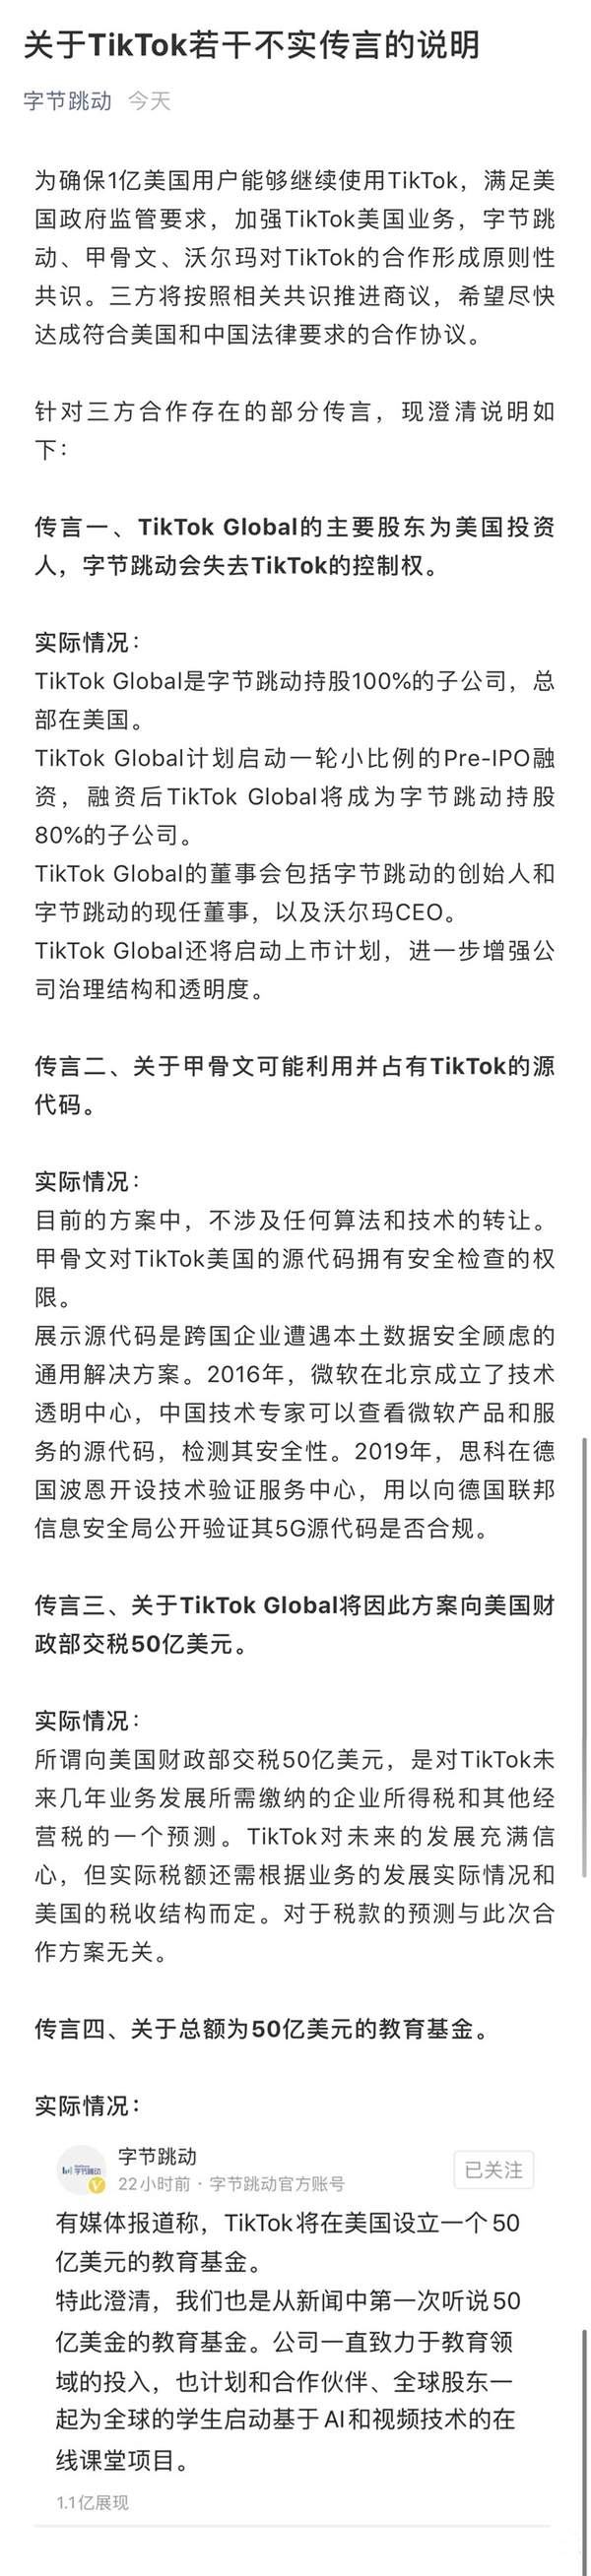 字节跳动发布TikTok不实传言说明,官方在线辟谣